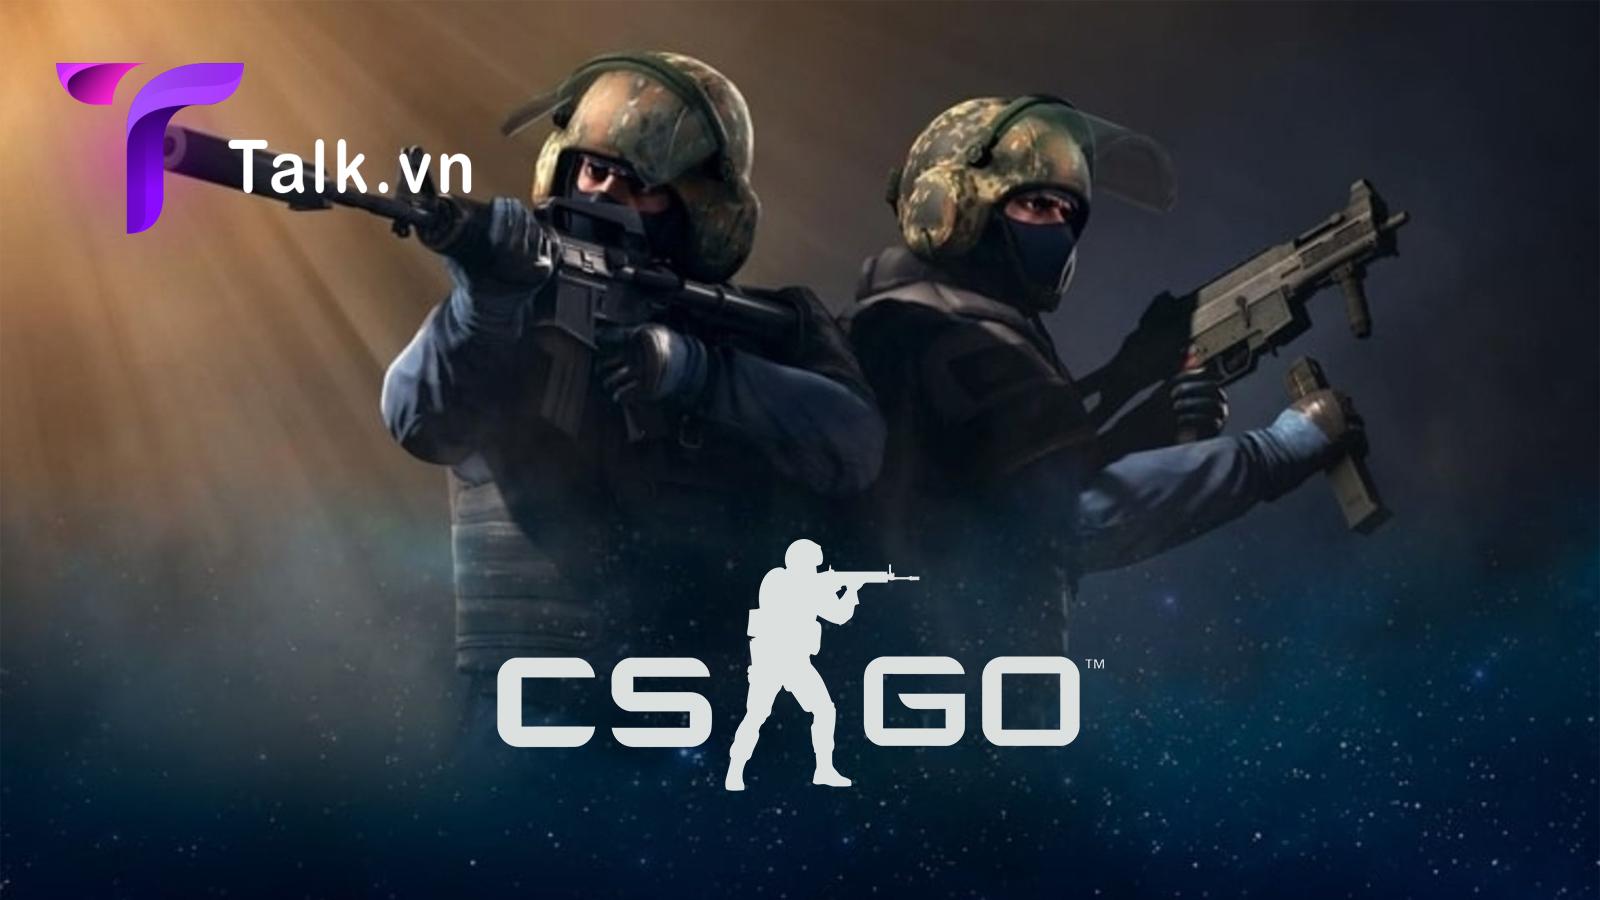 CS GO là game chiến thuật với cấu hình đẹp mắt